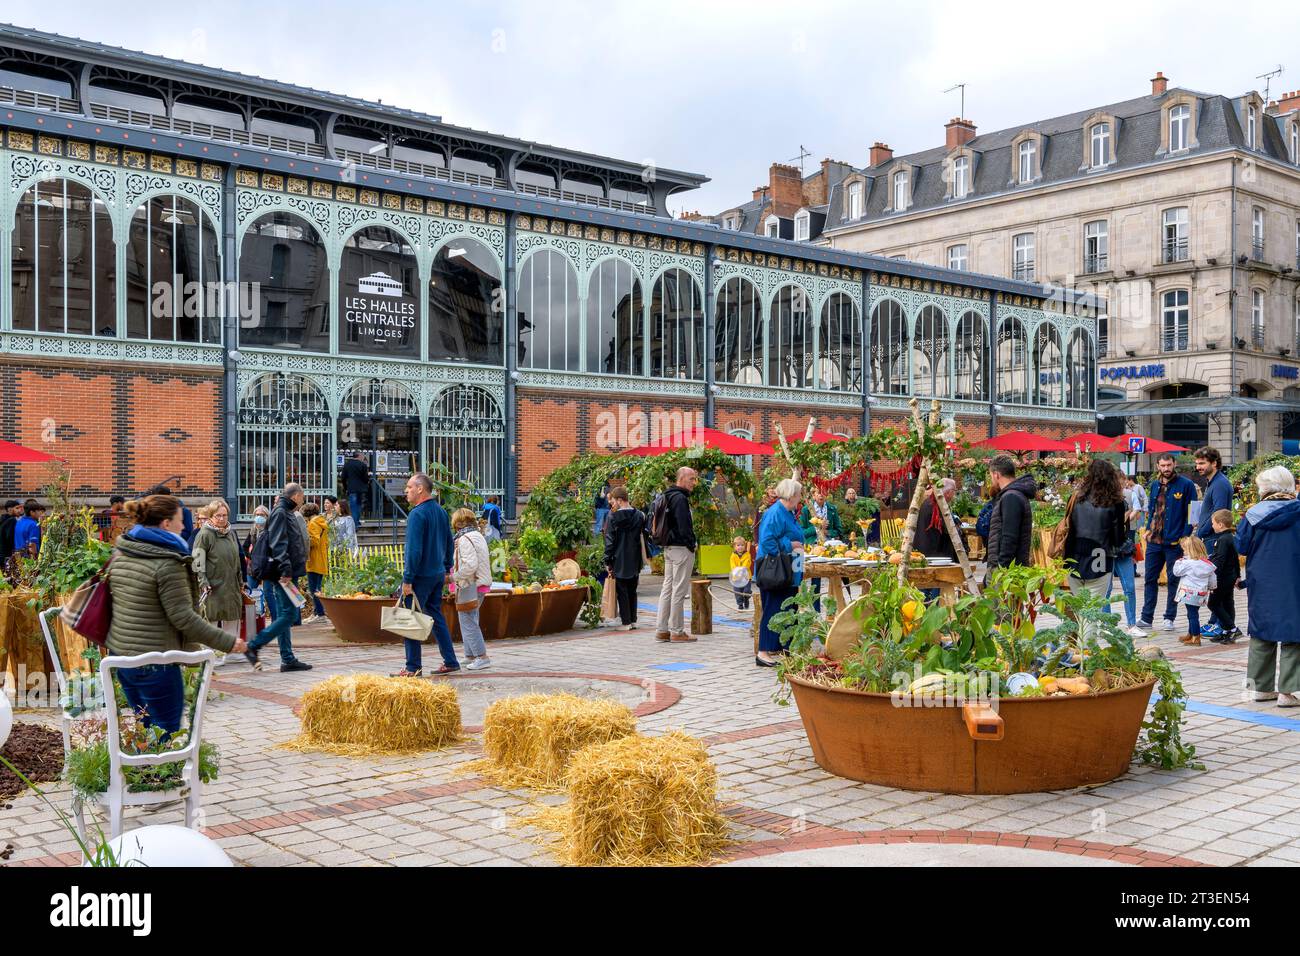 Fuori dai mercati centrali di Limoges (Les Halles Centrales Limoges). Esposizione di porcellana e prodotti in un orto a Place de la Motte. Foto Stock